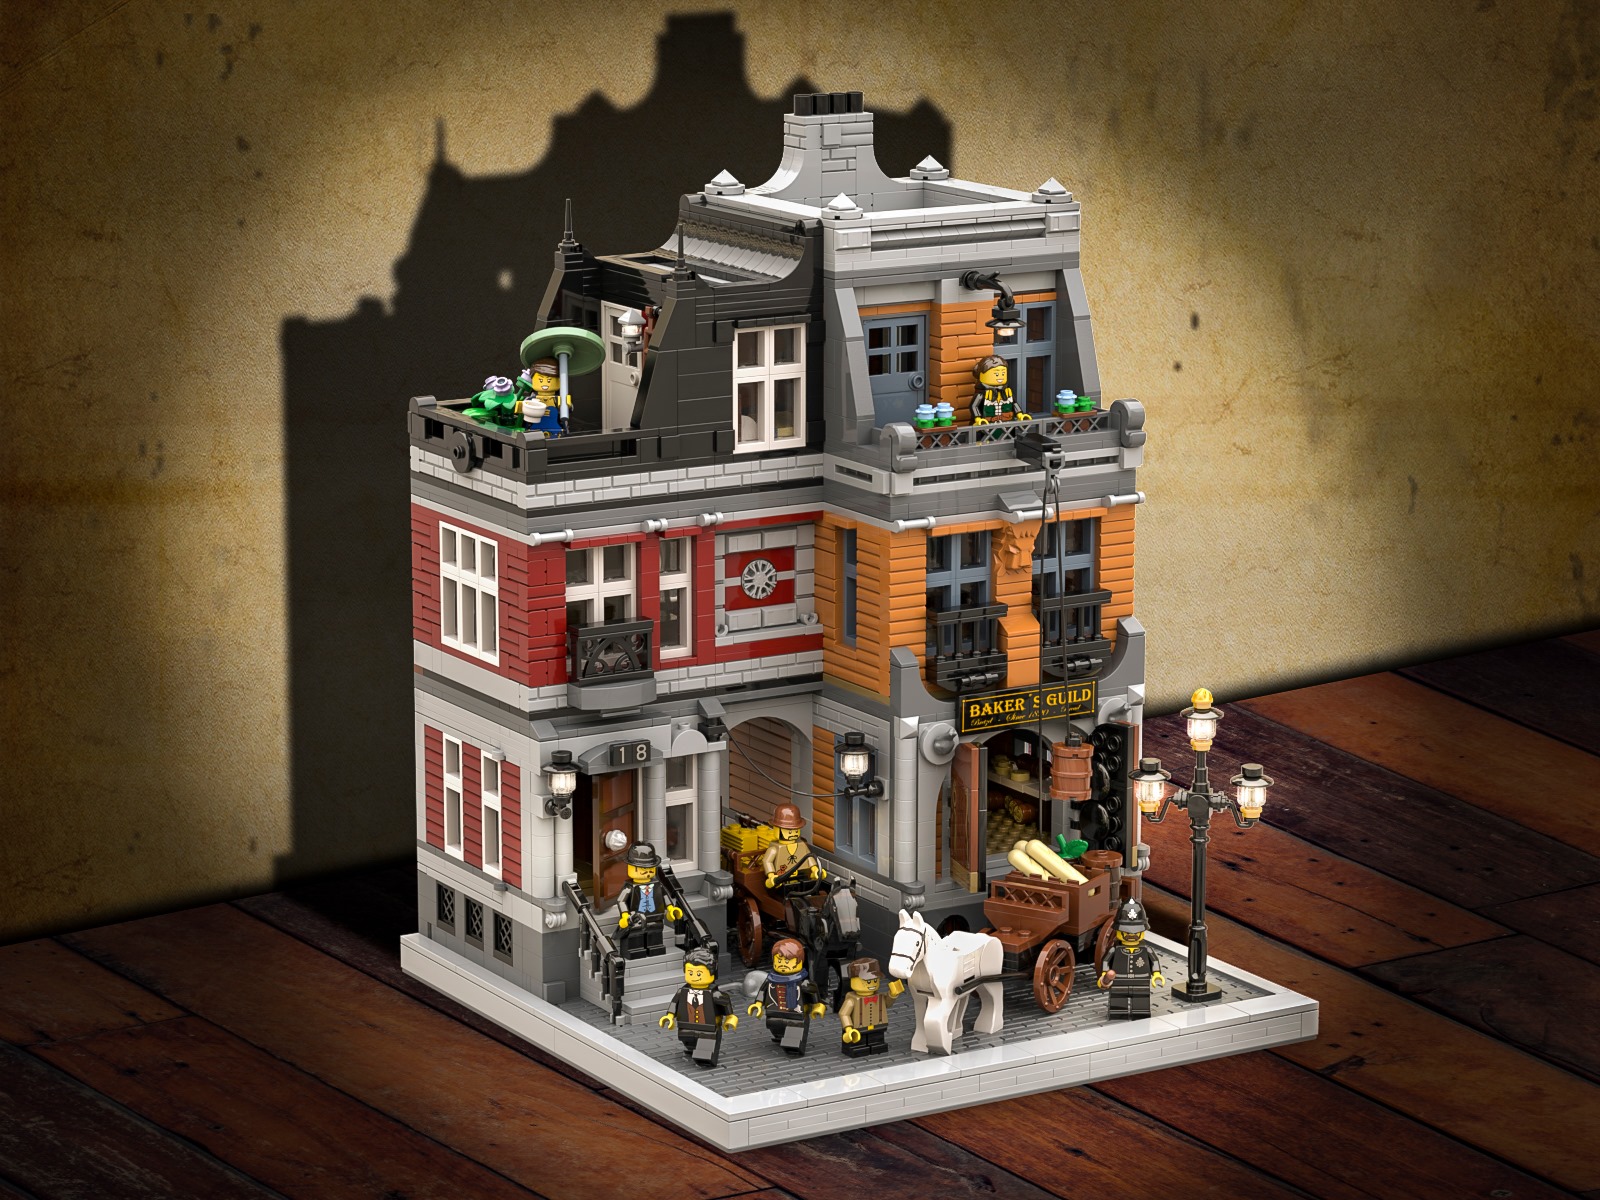 LEGO Historische B ckerei Modular Building In Perfektion Zusammengebaut